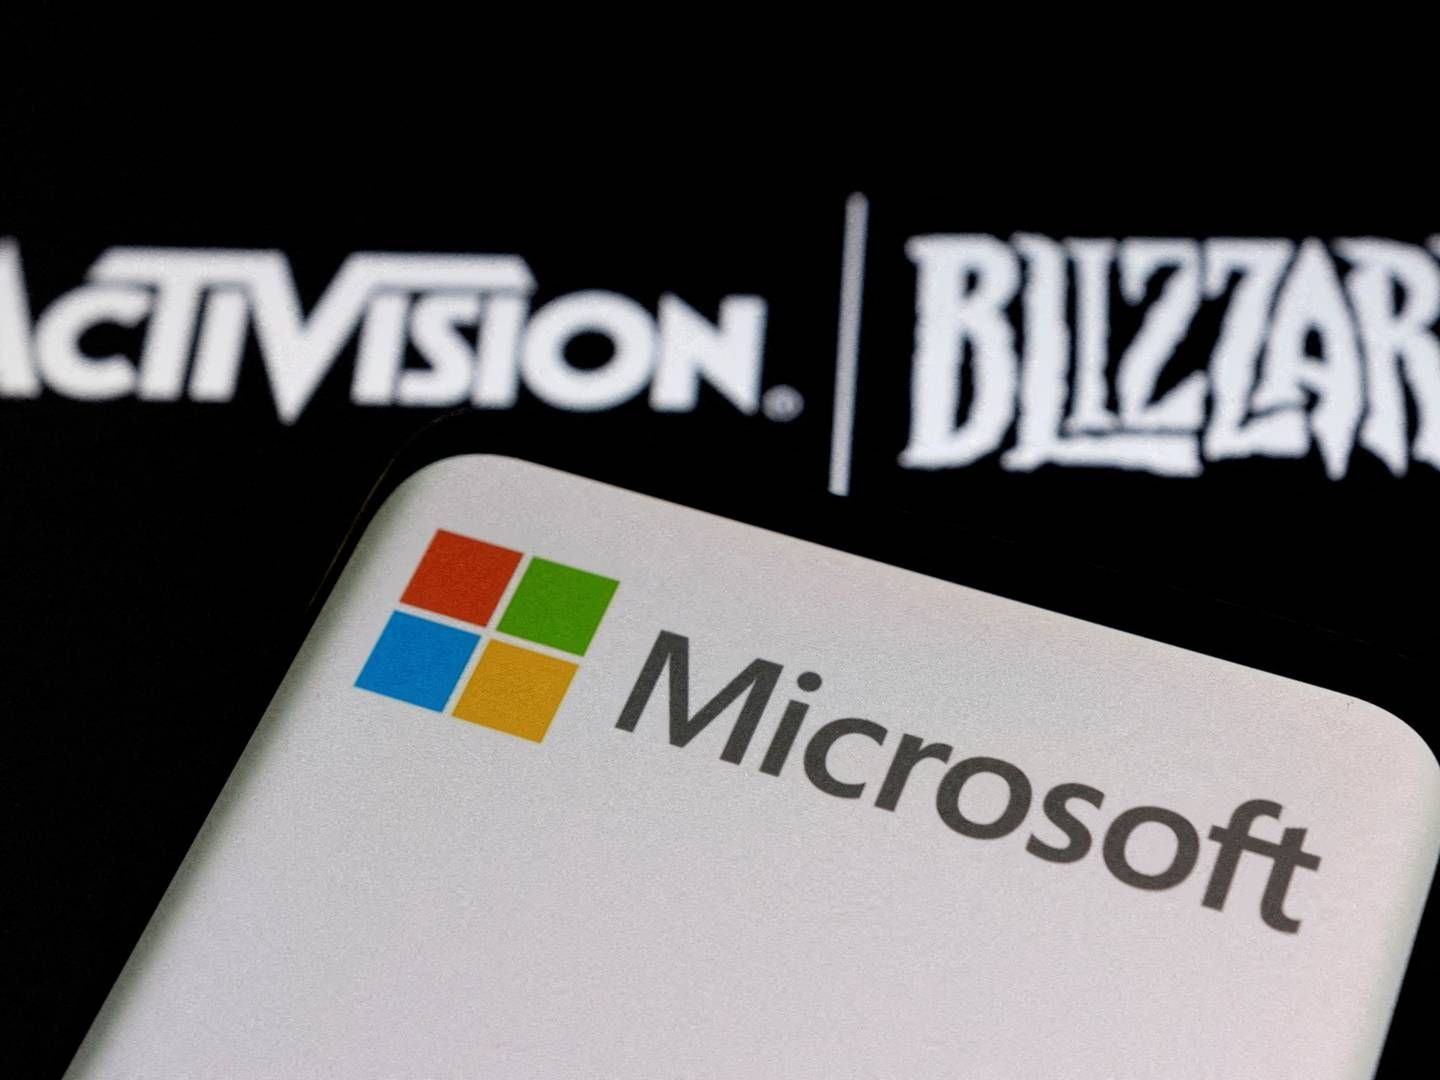 Spilvirksomheden Activision Blizzard er ved at blive købt af Microsoft. | Foto: Dado Ruvic